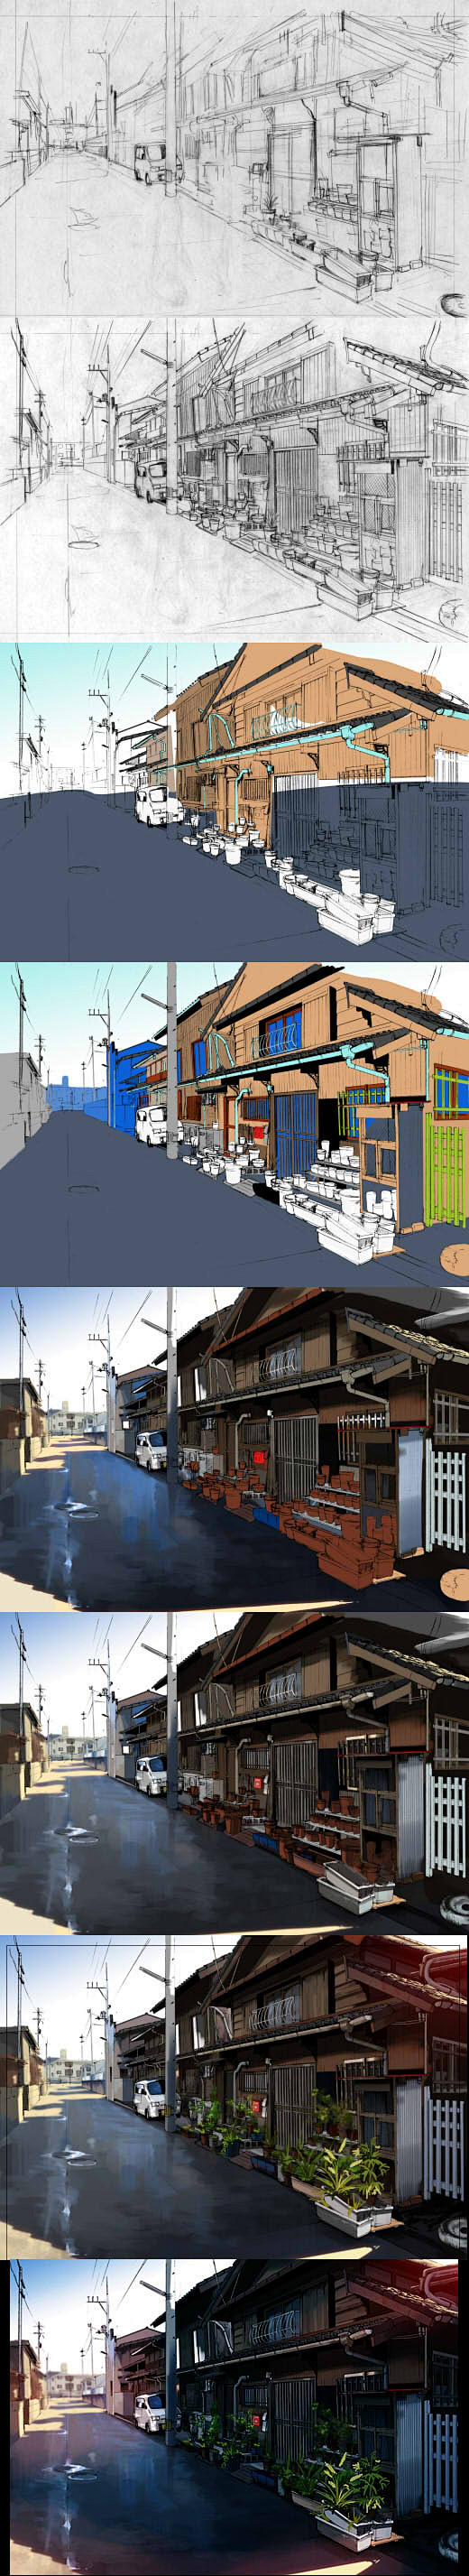 日本乡村街道背景漫画场景绘制过程